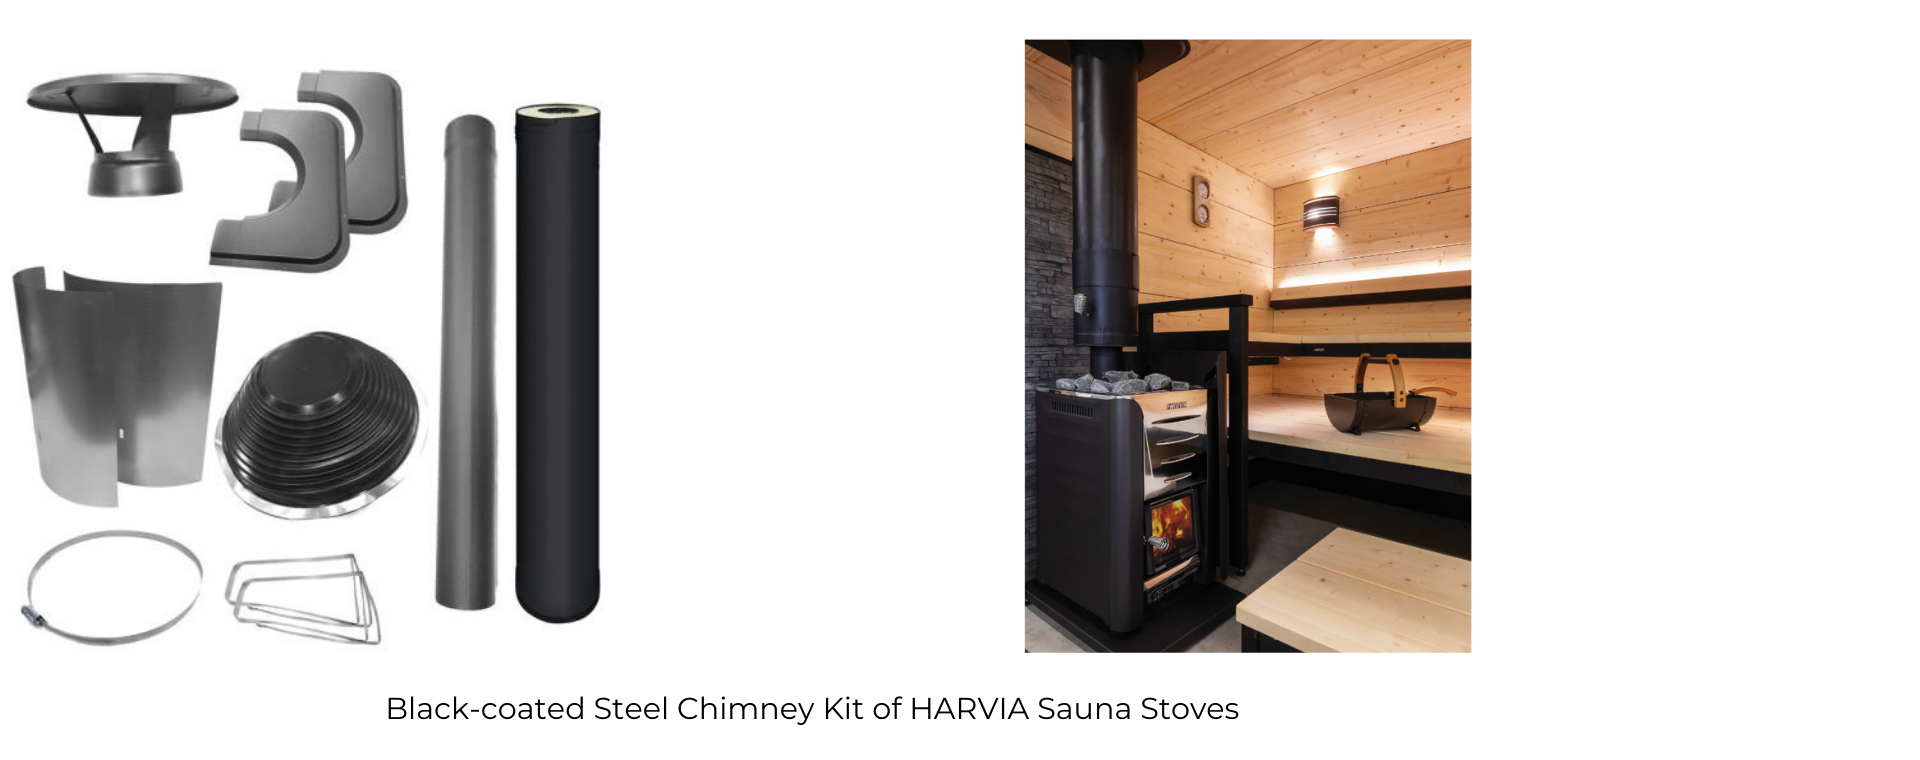 Harvia PRO 20 DUO Steel 24.1kW Wood-Burning Sauna Stove